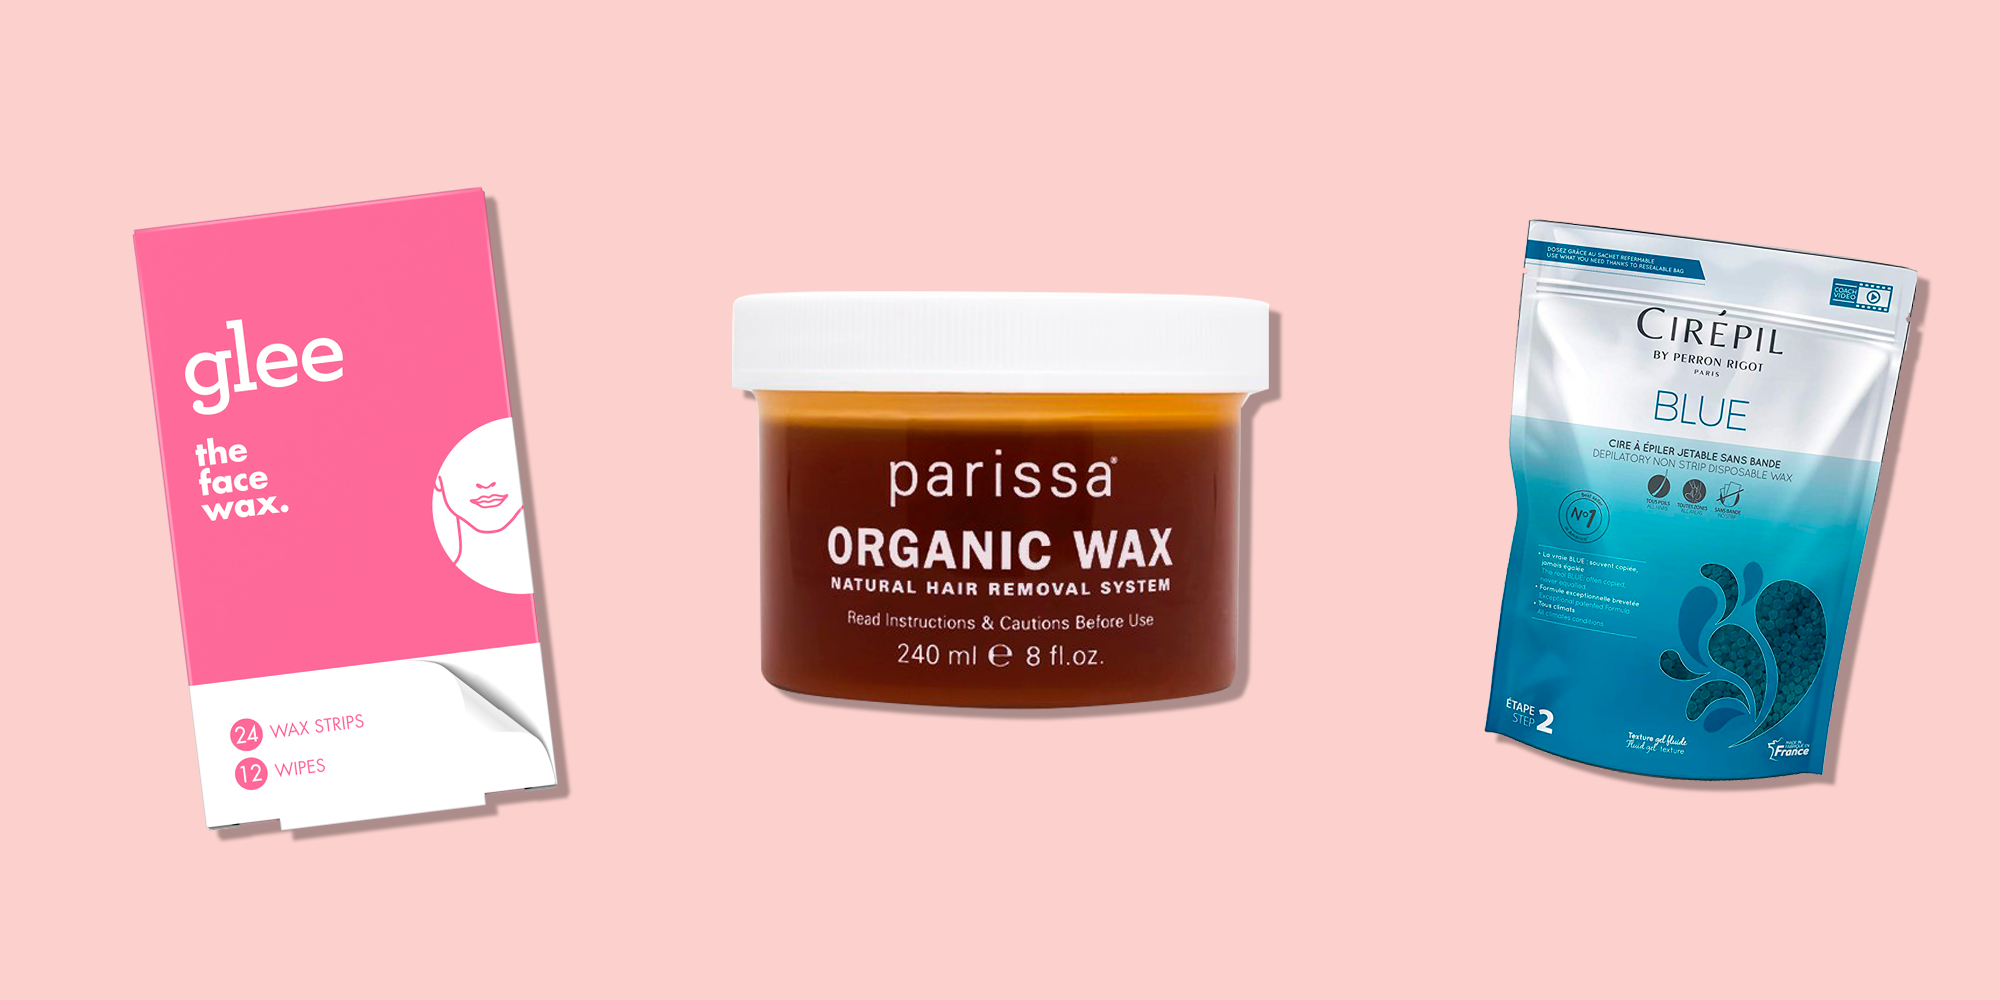 The Best At-Home Waxing Kits - Waxing tips, Bikini wax, Beauty hacks